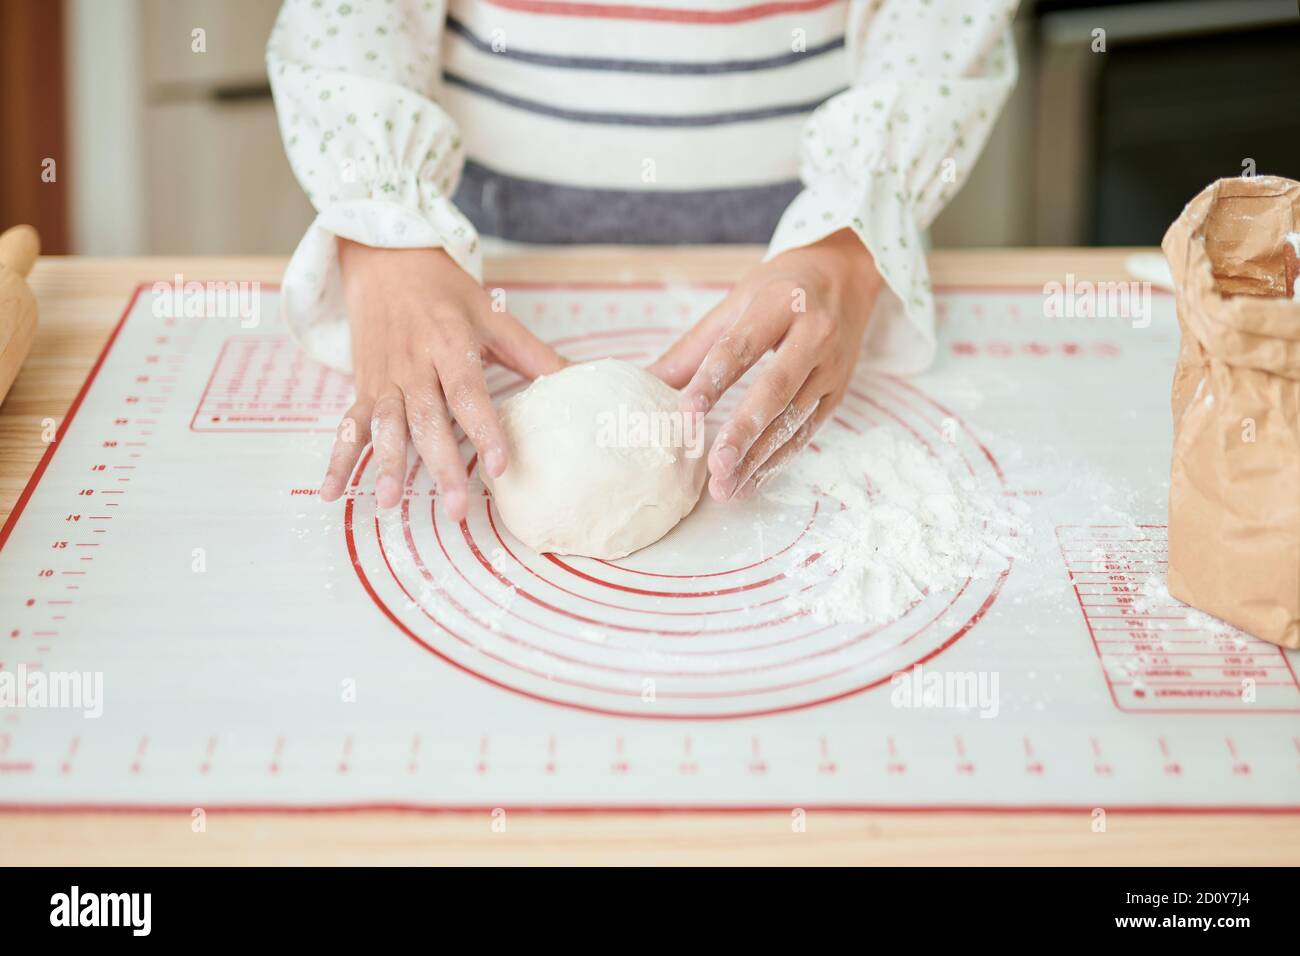 Frau Hände kneten frischen Teig für die Herstellung von Brot Stockfoto